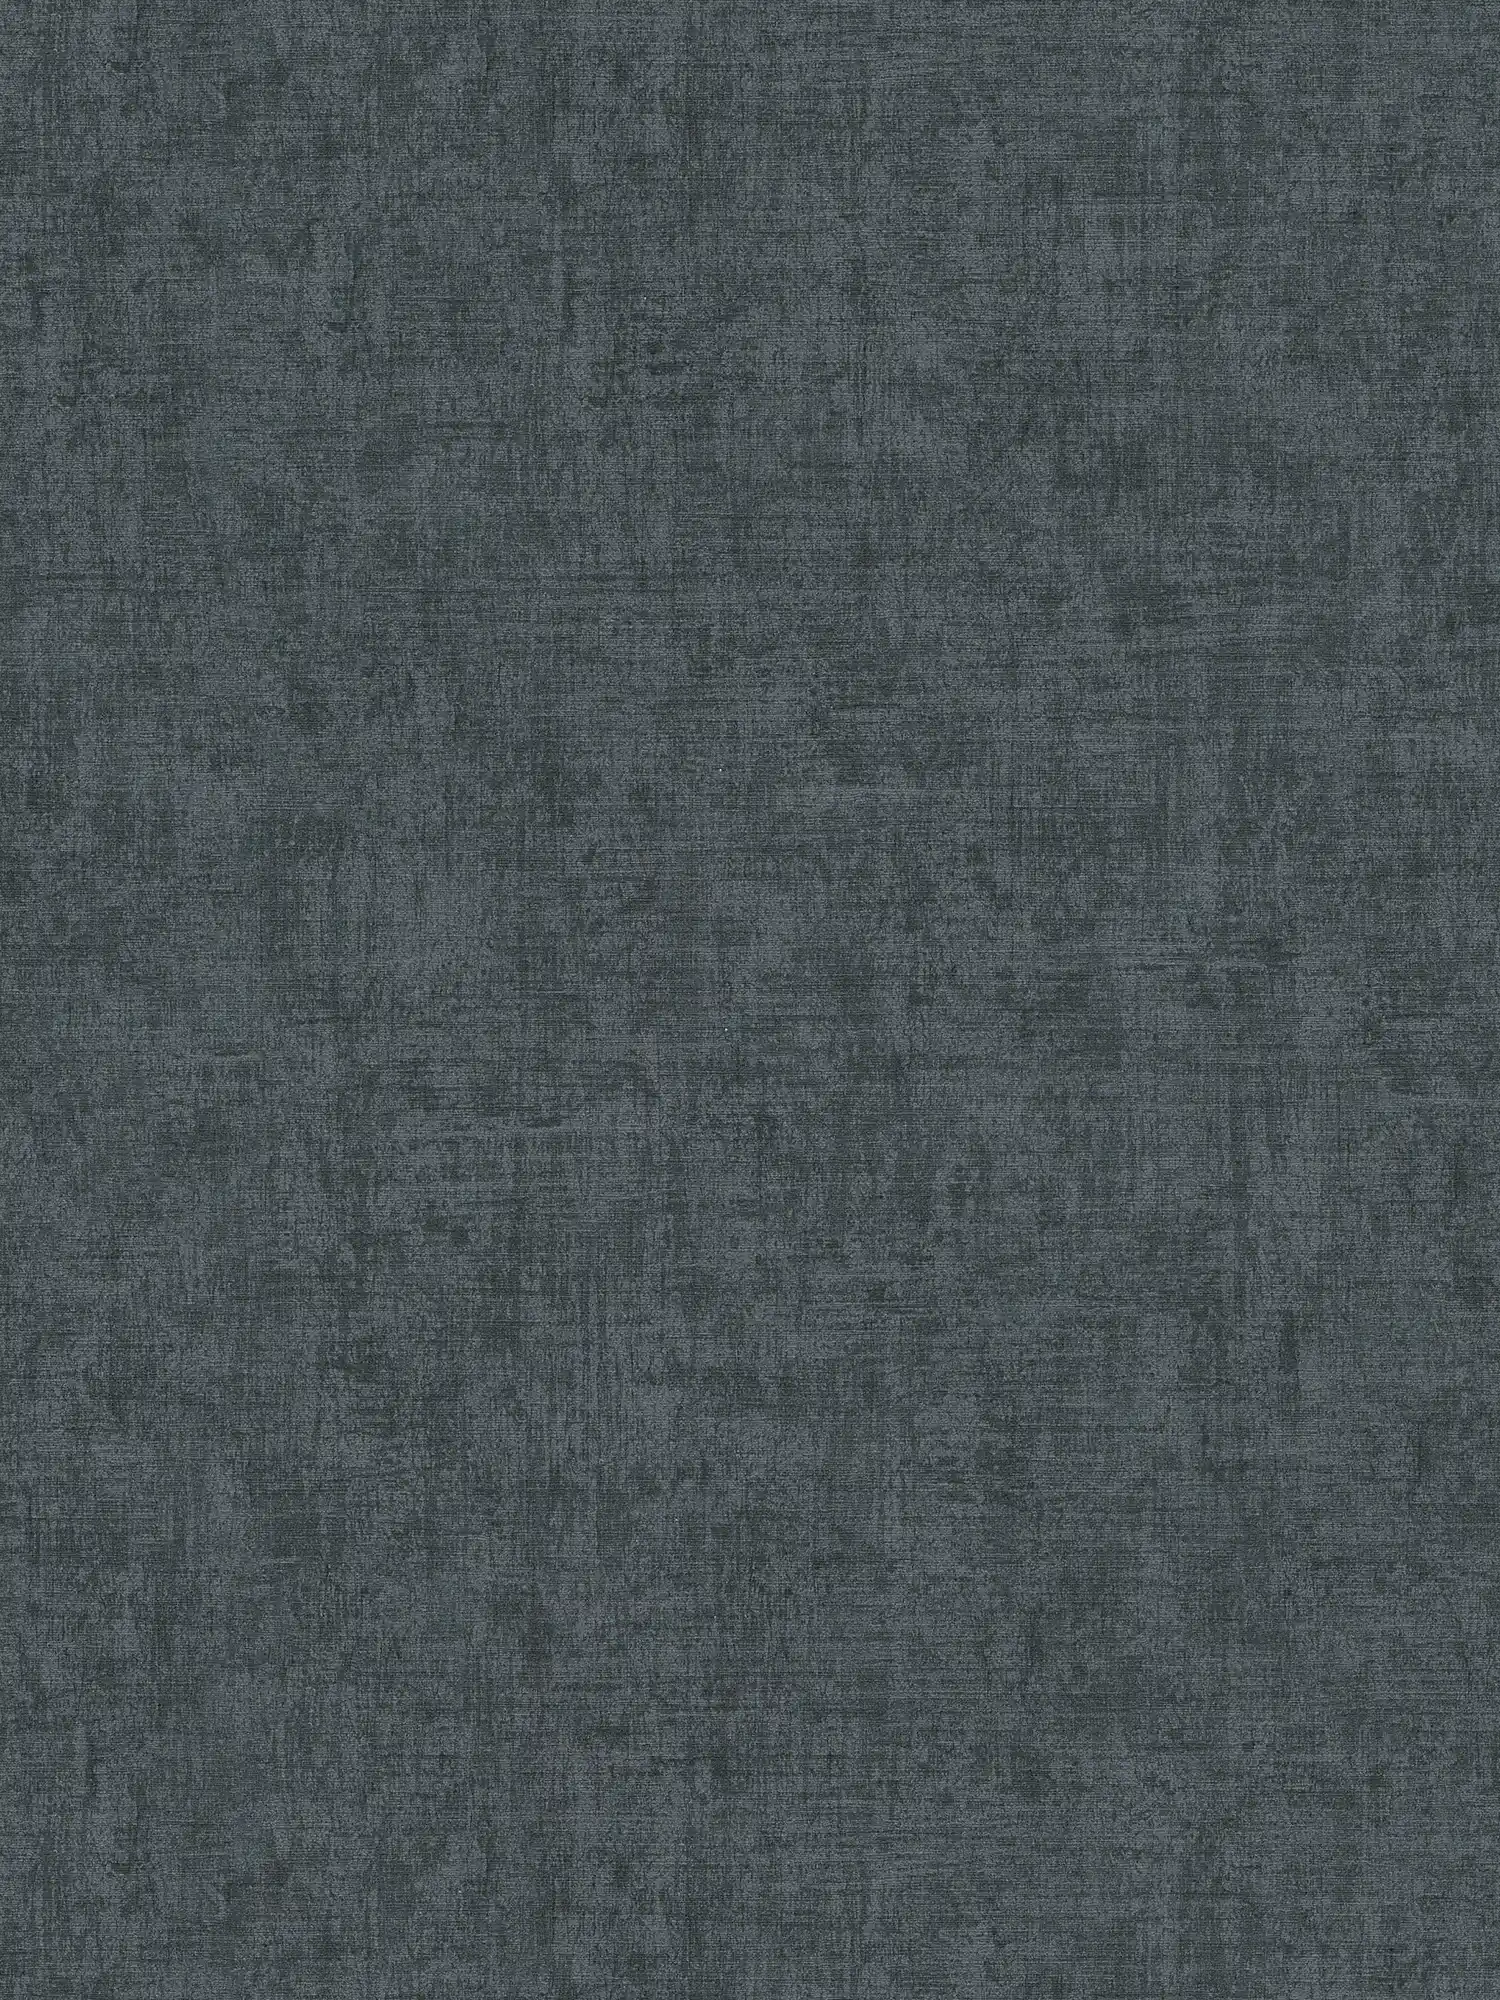 Donker behang met kleur en structuurpatroon - grijs, zwart
